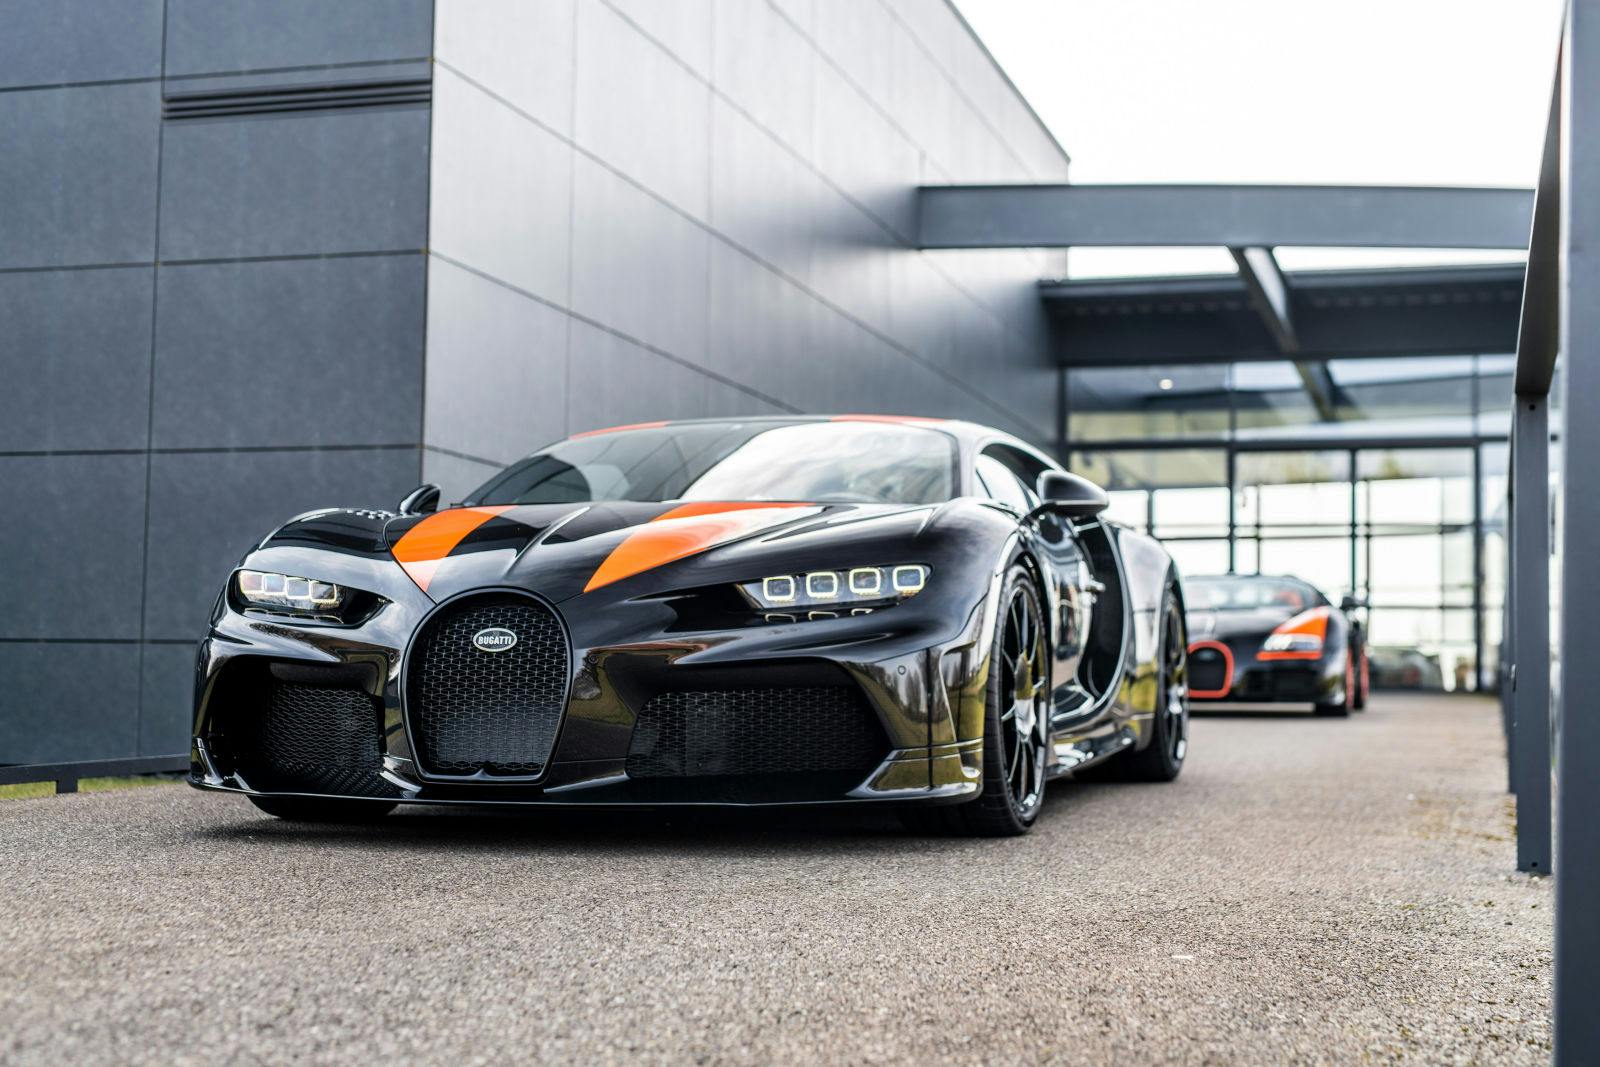 Ein neuer Chiron Super Sport 300+ und ein zertifizierter Veyron Grand Sport Vitesse World Record Edition von "La Maison Pur Sang" waren Teil des ultimativen Übergabeerlebnisses, das Bugatti kürzlich erschaffen hat.